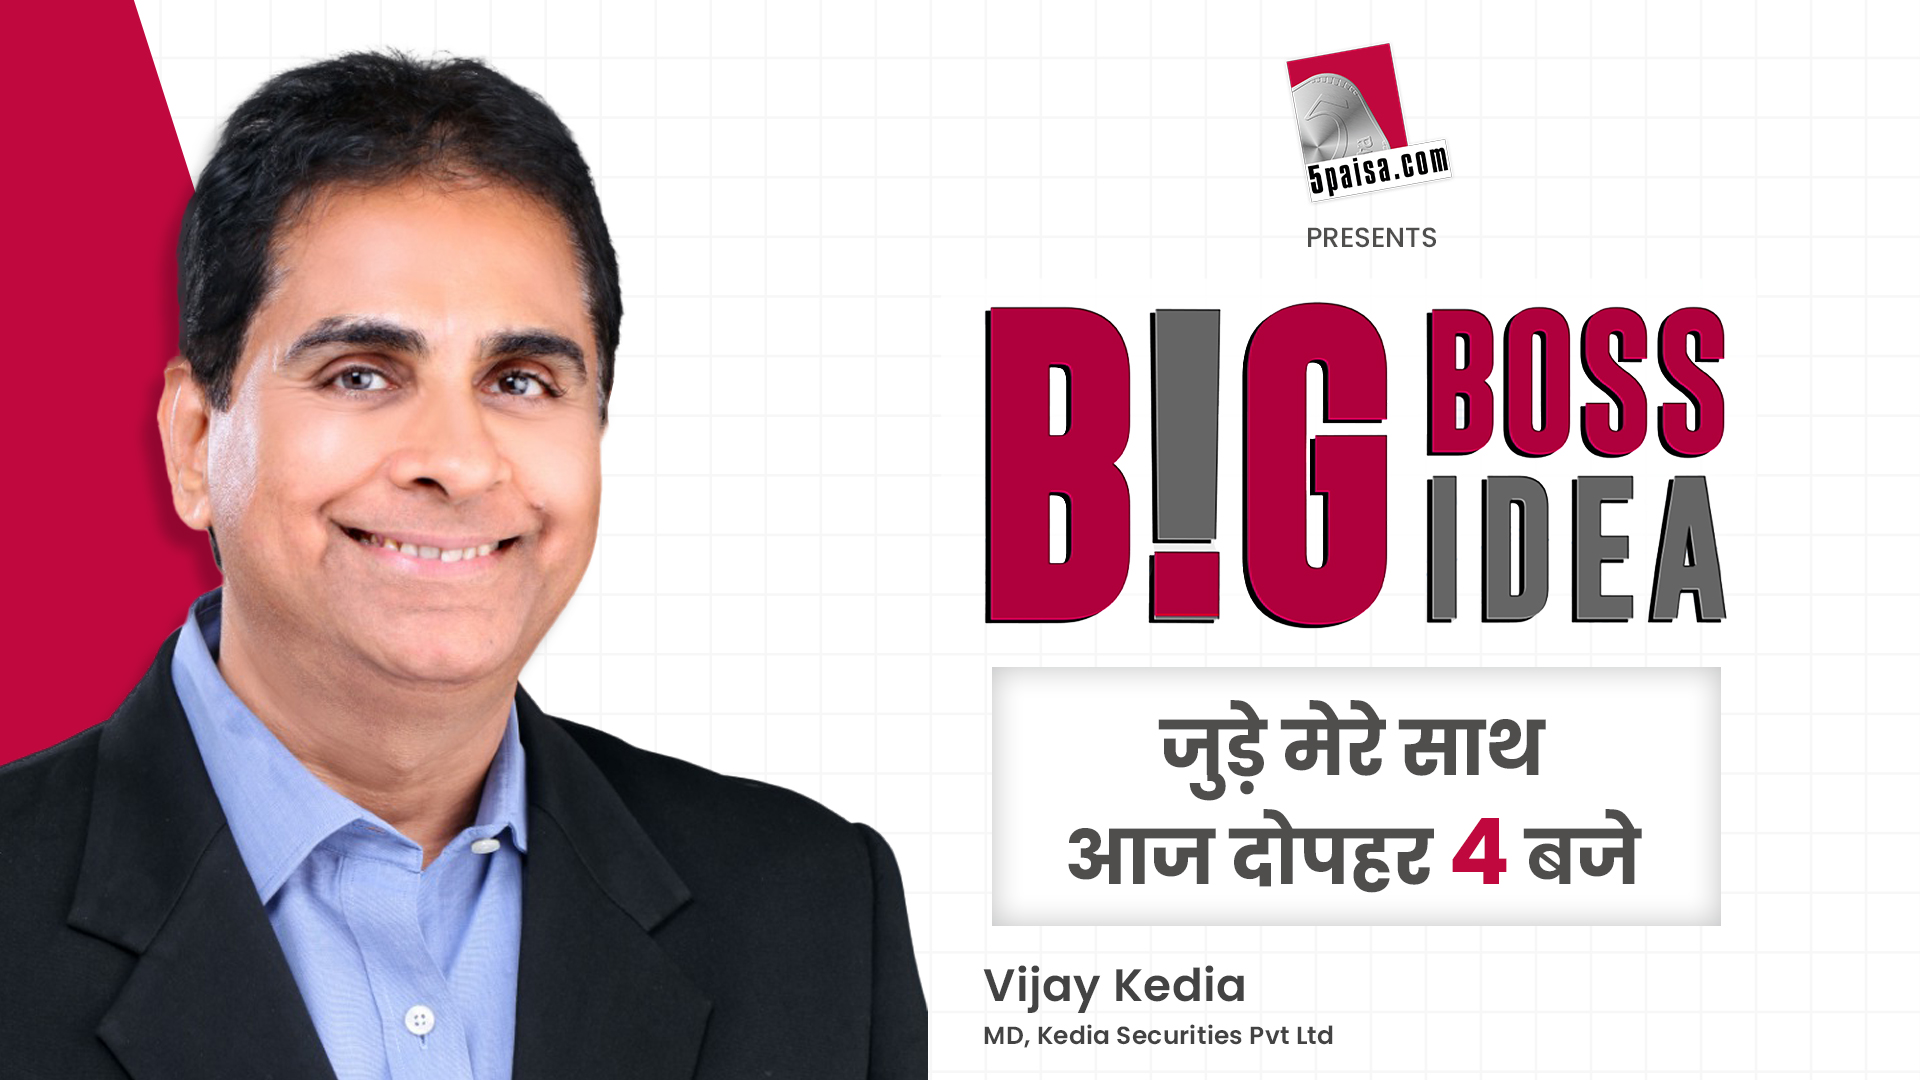 Big Boss, Big Idea EP-04 शेयर मार्केट एक्सपर्ट Vijay Kedia से जानें मार्केट के अस्थिर होने के कारण